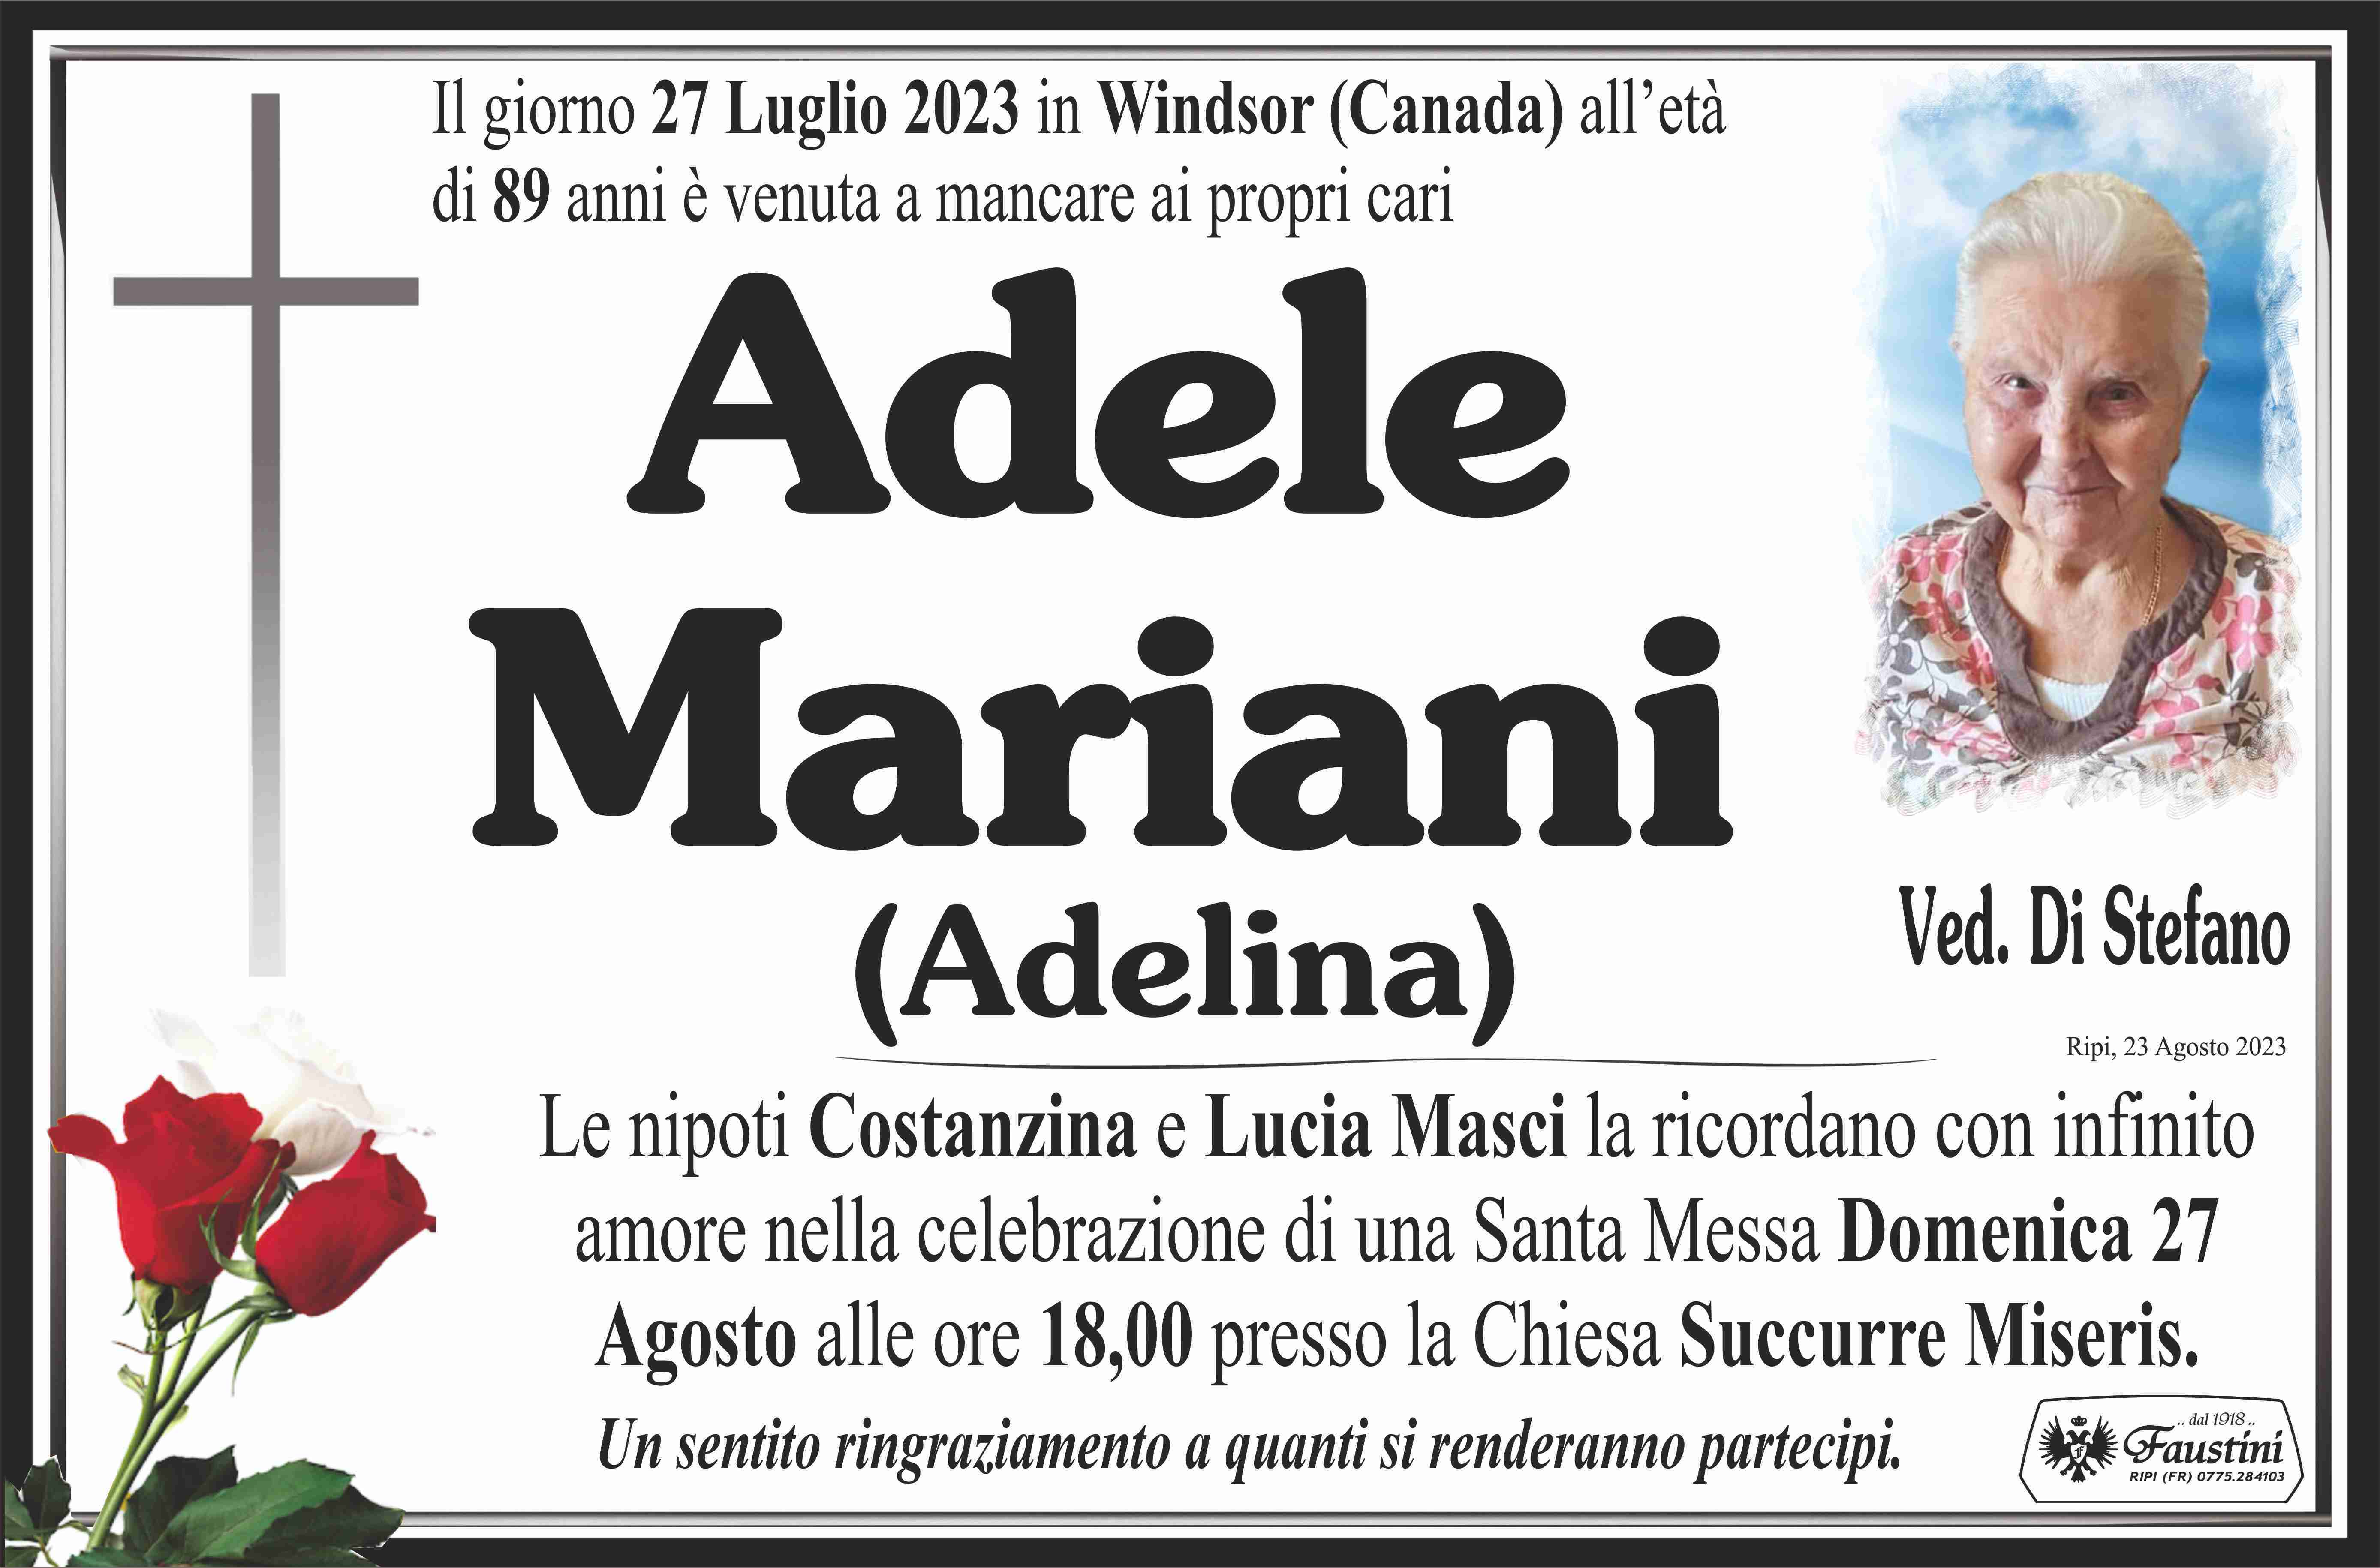 Adele Mariani (Adelina)